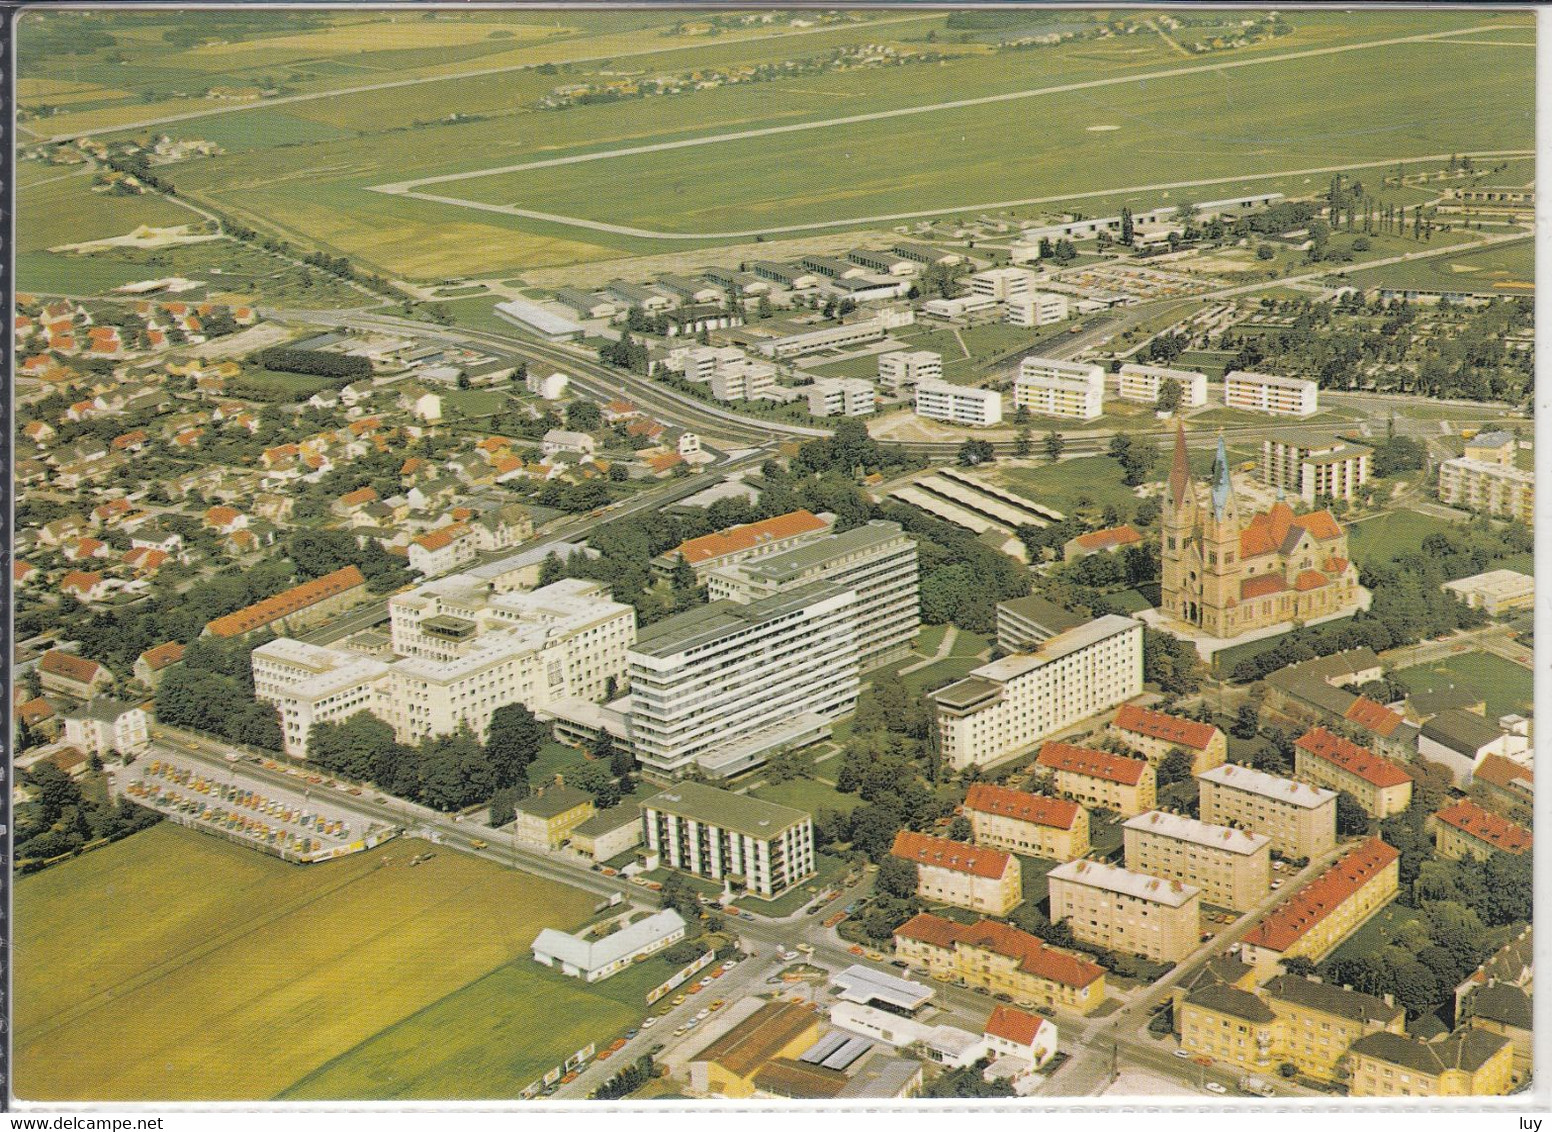 WELS - Allgemeines Krankenhaus, Luftbild, Fliegeraufnahme, Panorama Ca. 1970 / 80 - Wels